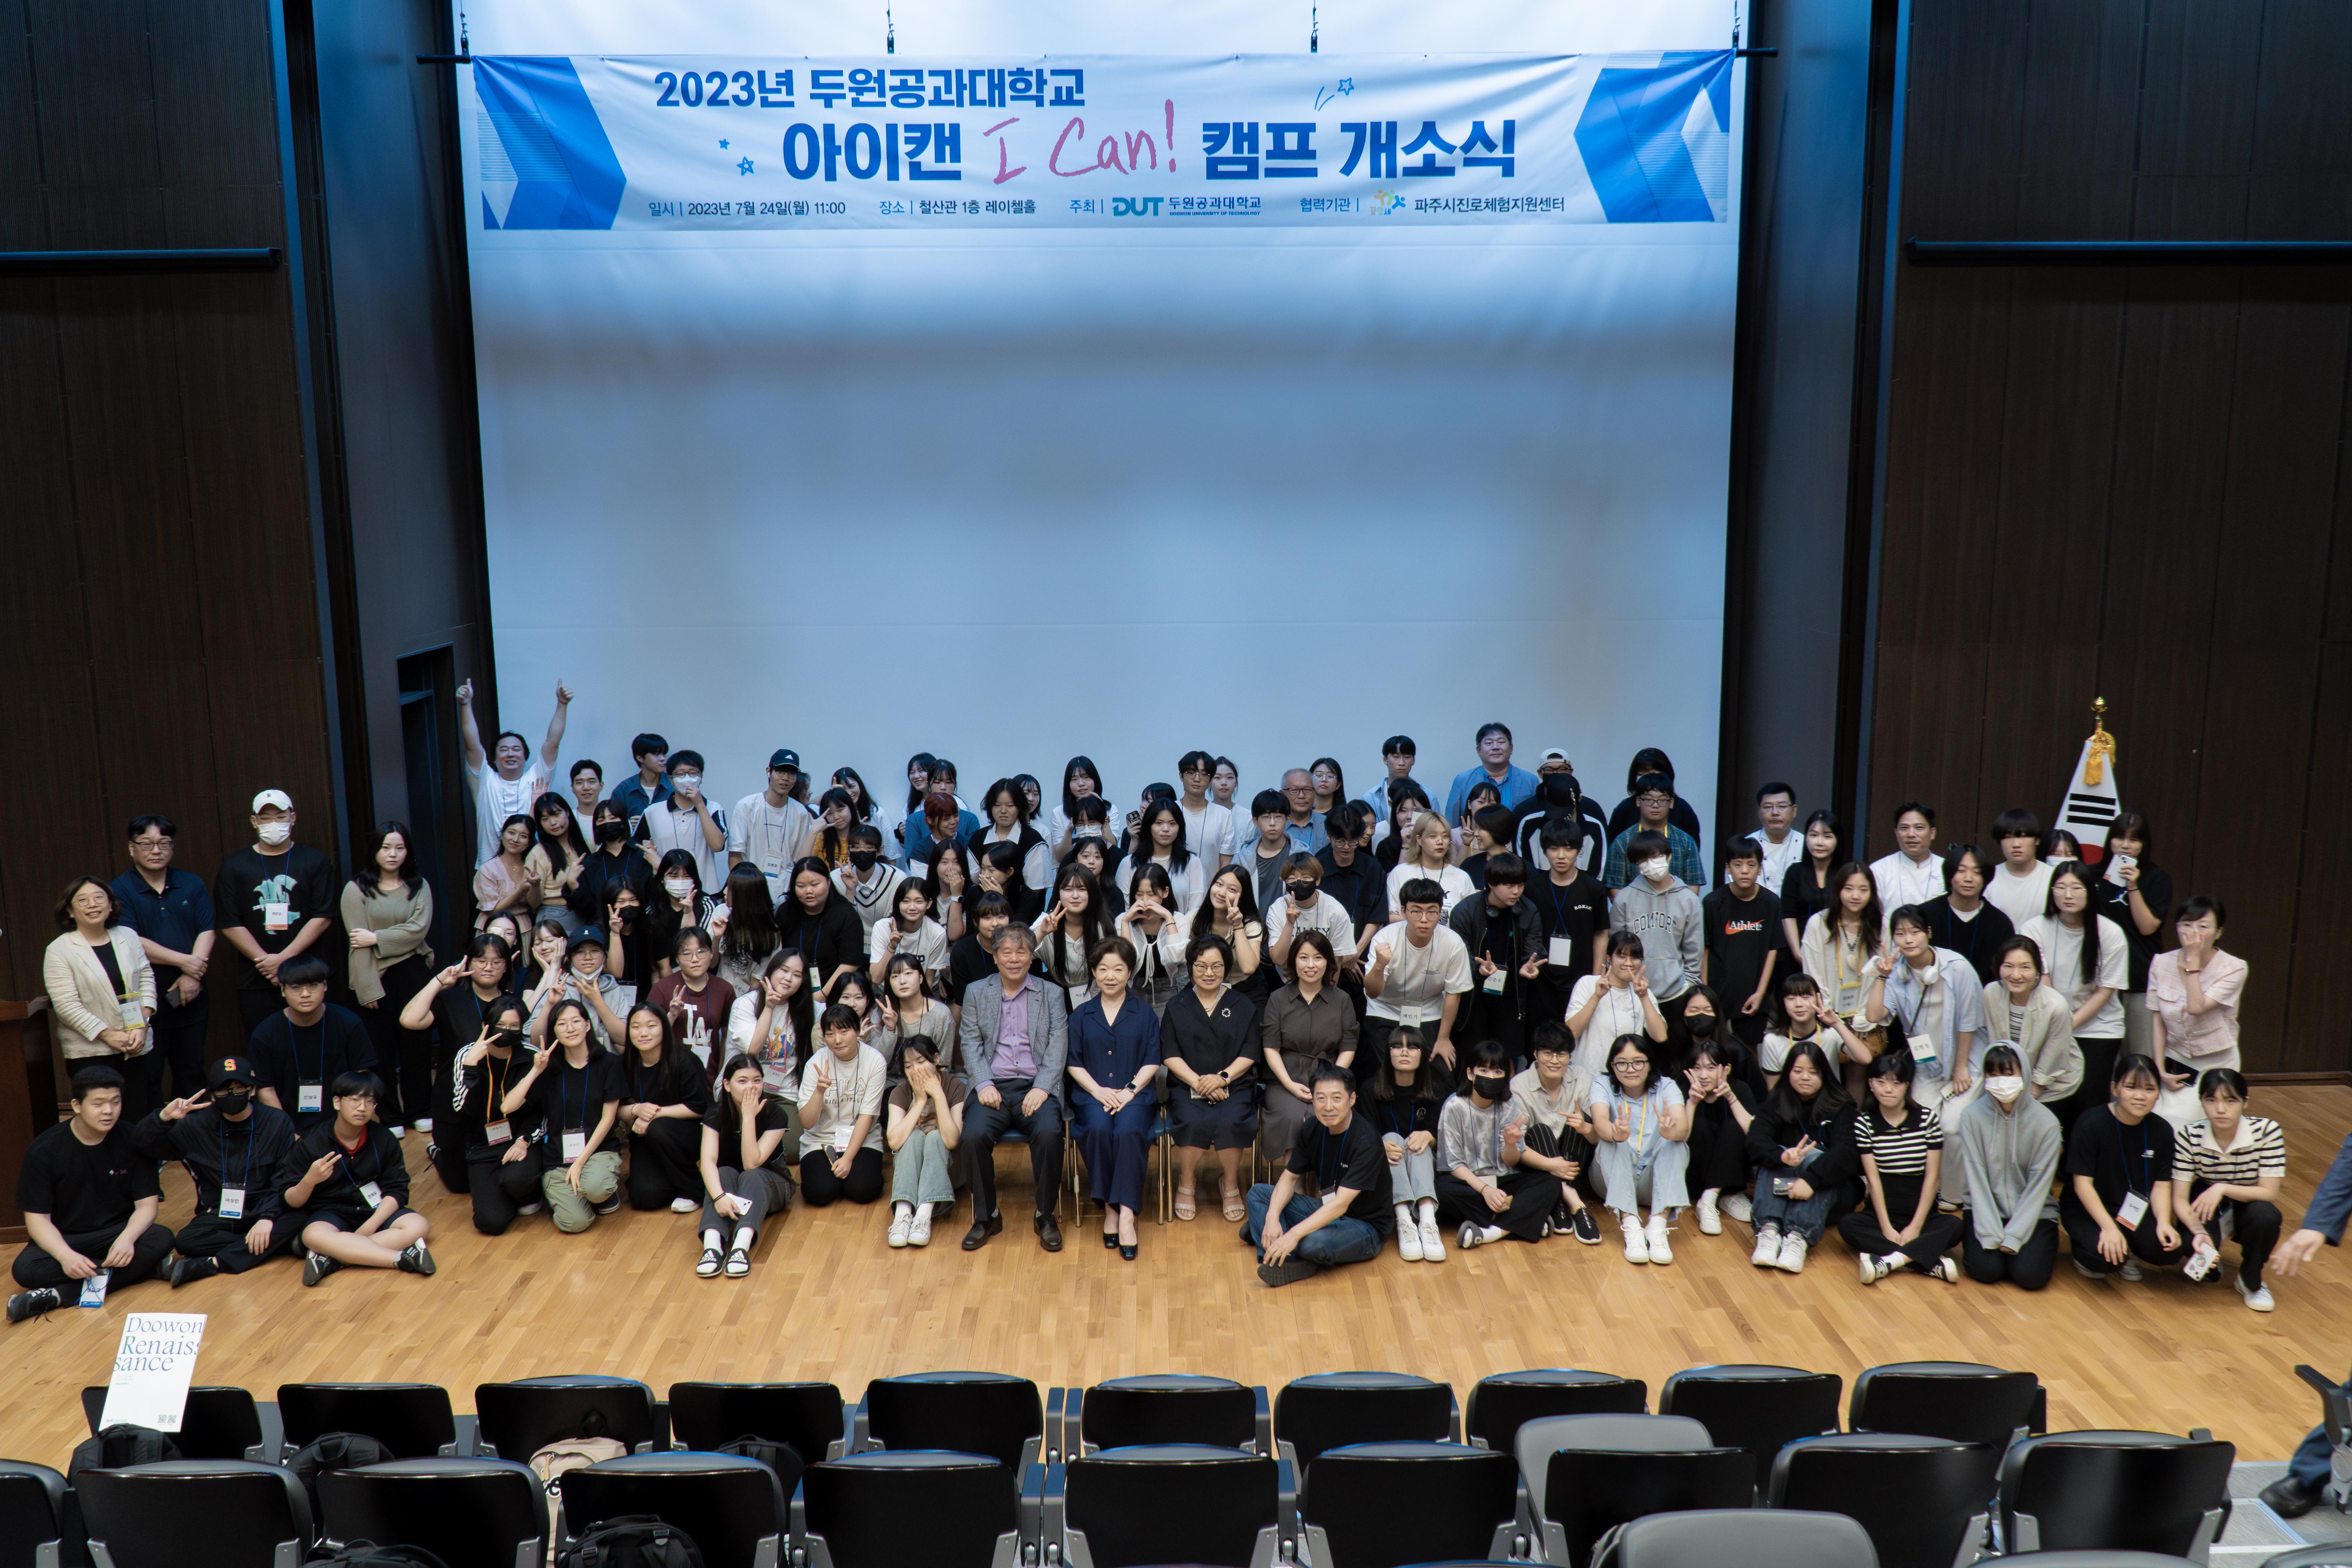 진로체험프로그램 ‘아이캔(I CAN) 캠프’ 성황리에 개최!